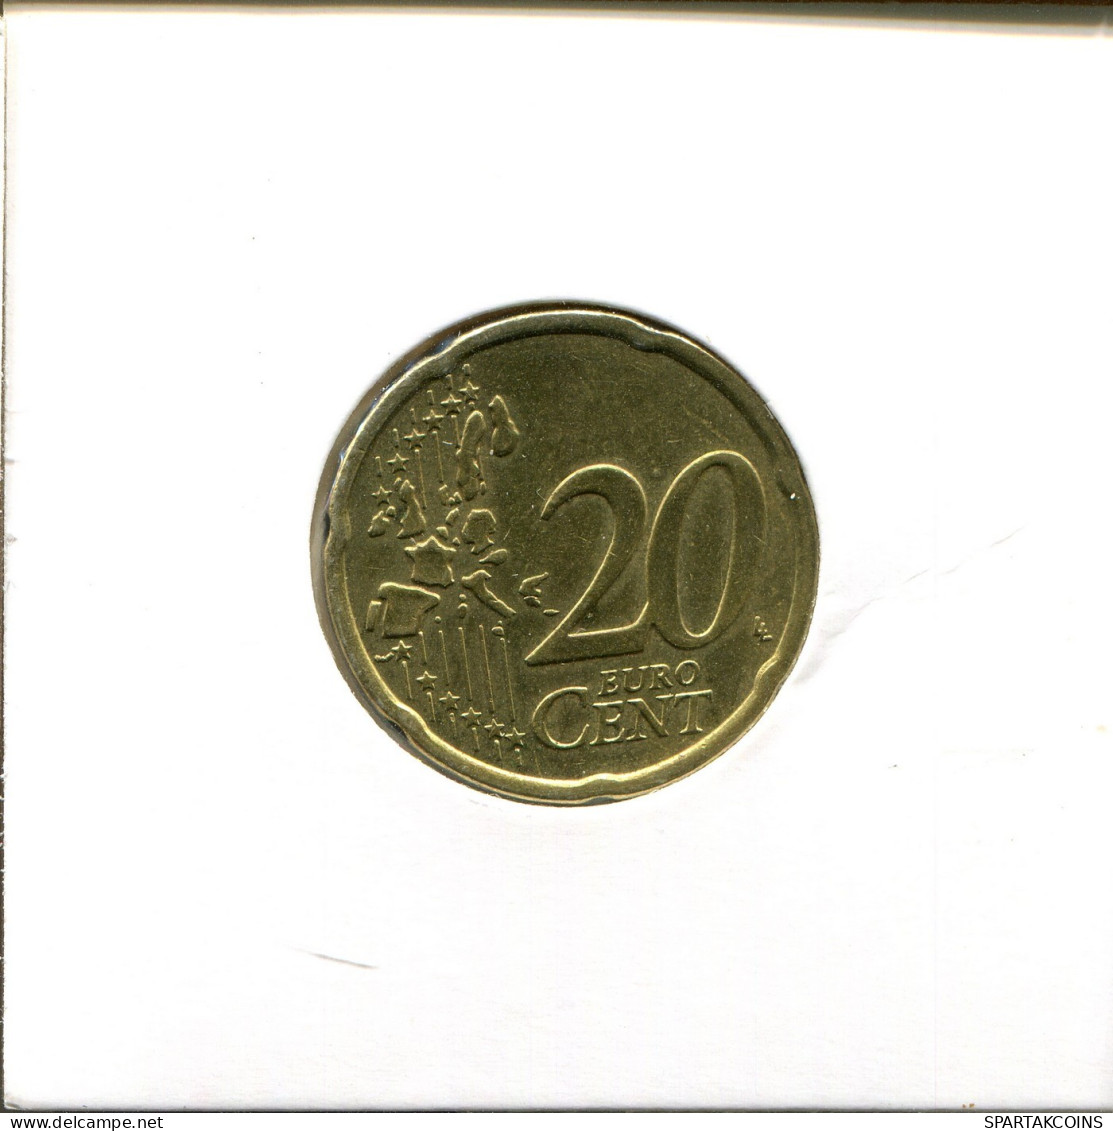 20 EURO CENTS 2001 FINLAND Coin #EU086.U.A - Finland